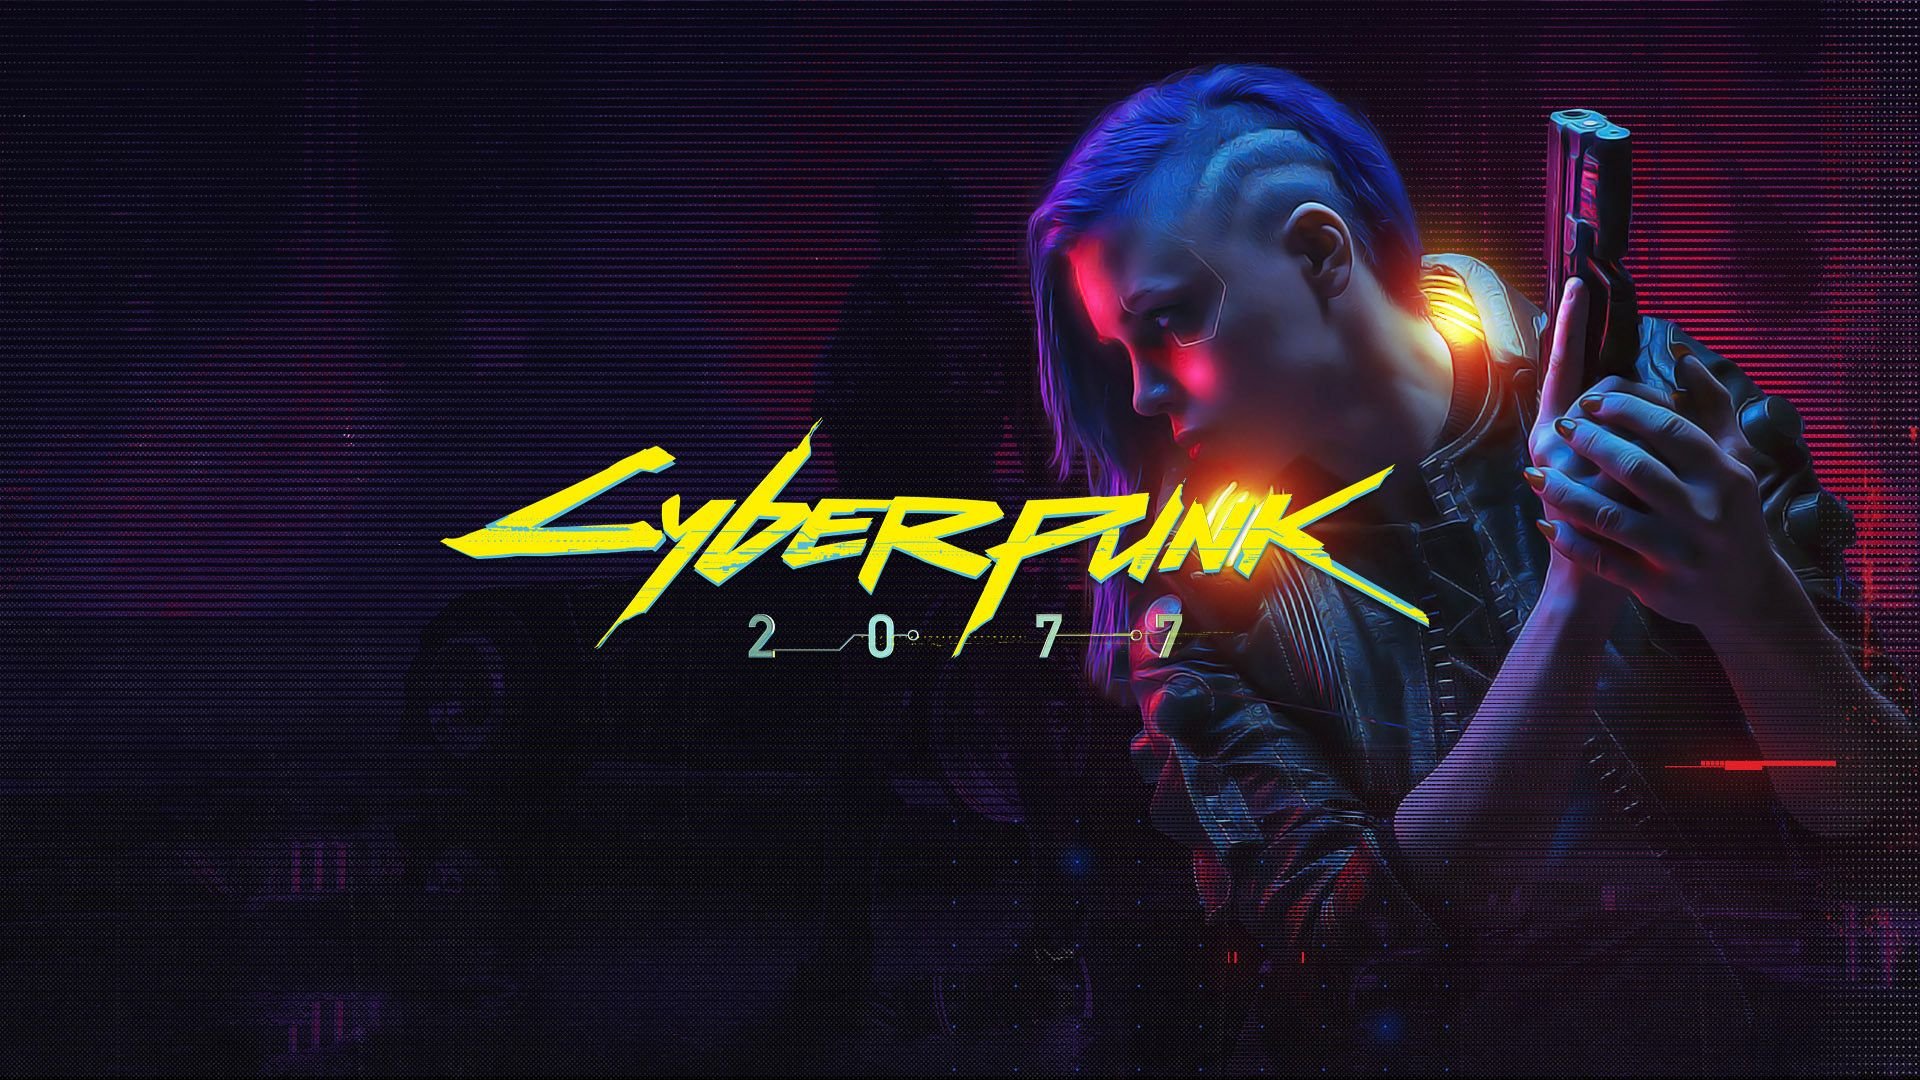 Cyberpunk logo ae фото 70